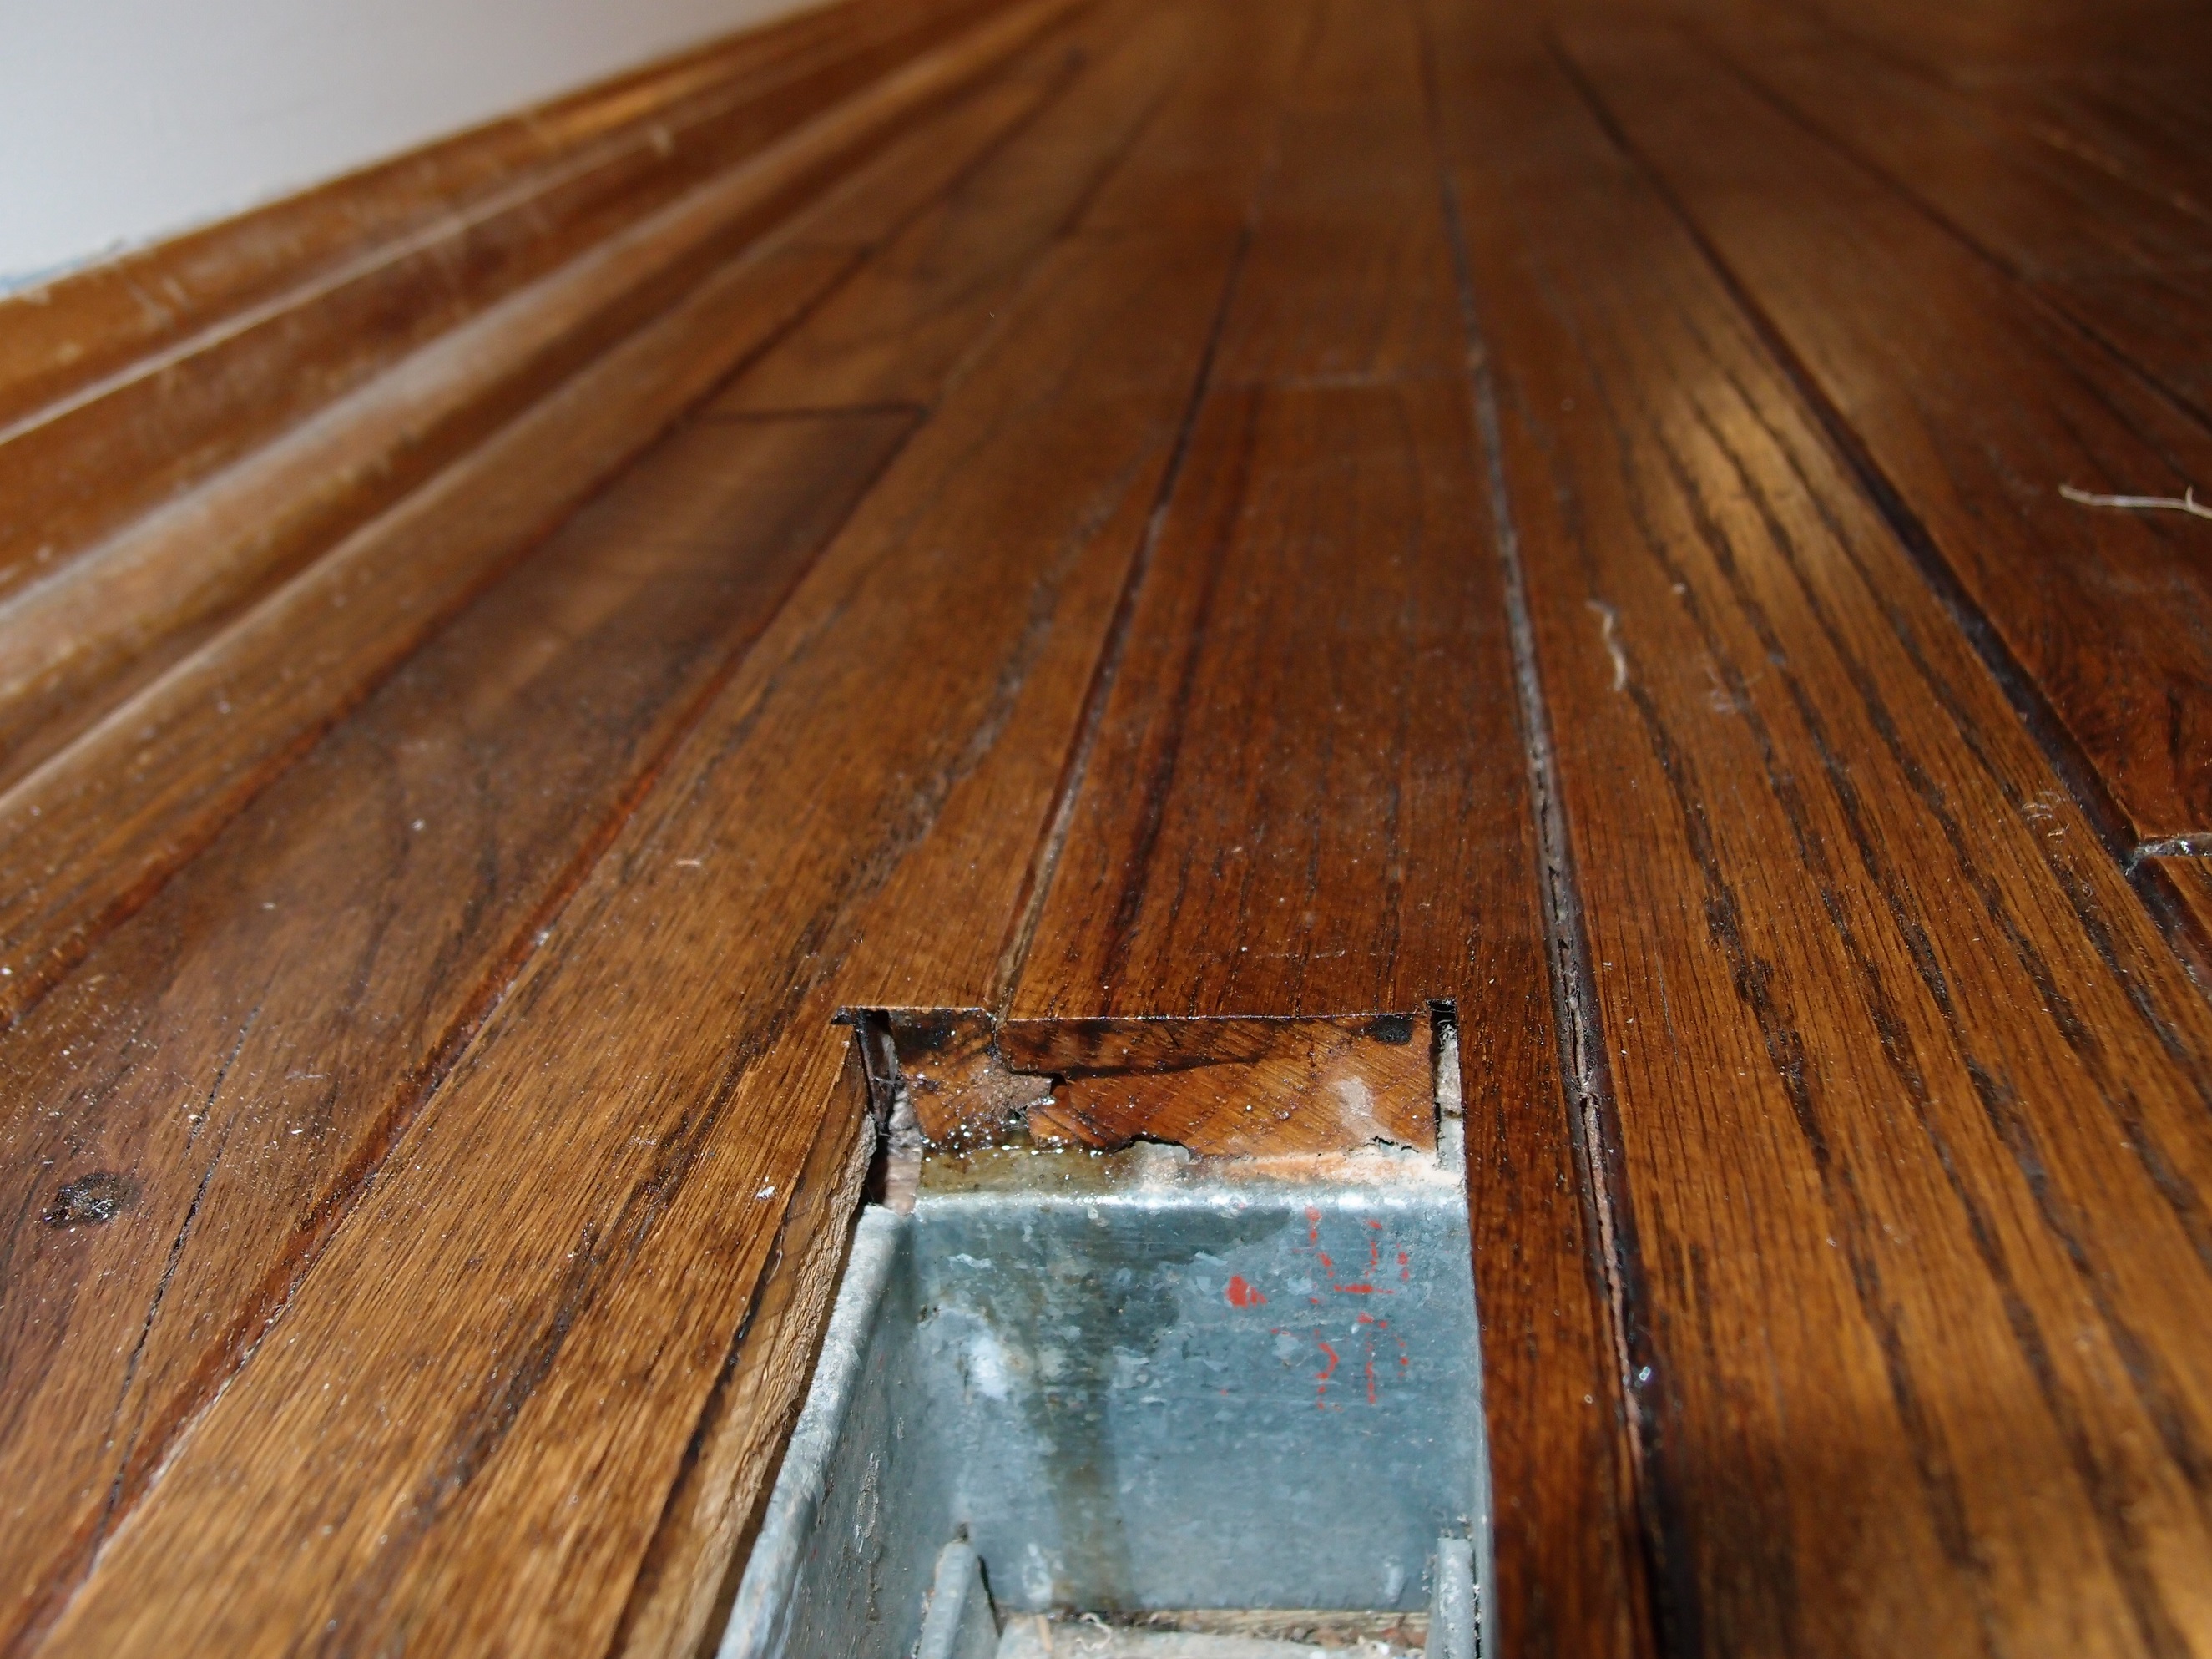 Refinishing Hardwood Floor With Edge, Can You Sand And Refinish Bruce Hardwood Floors